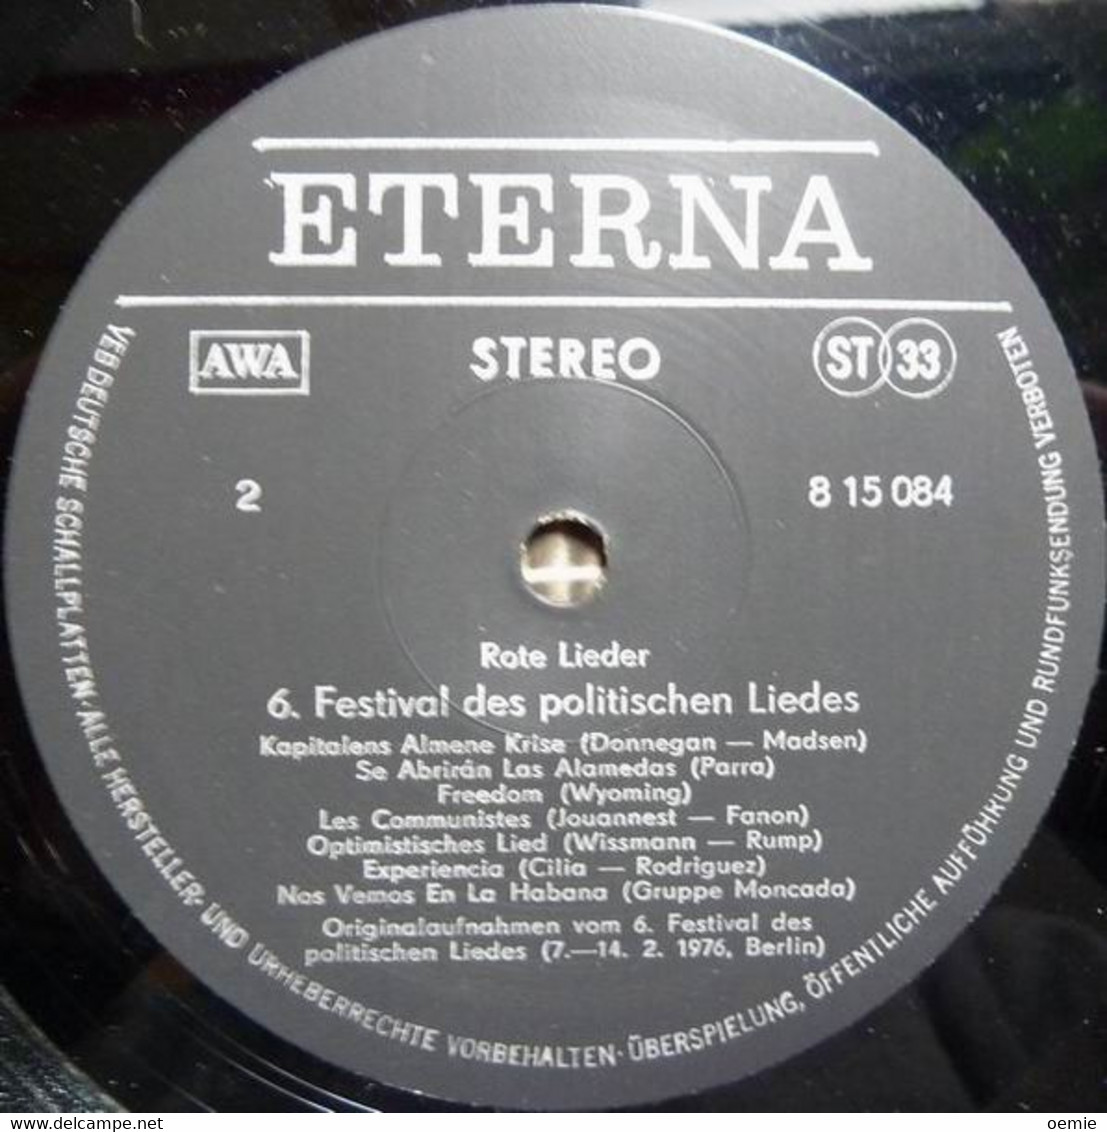 ROTE  LIEDER  °  BERLIN  7 / 14 2 / 1976  °  6 FESTIVAL  DES POLITISCHEN  LIEDES - Other - German Music